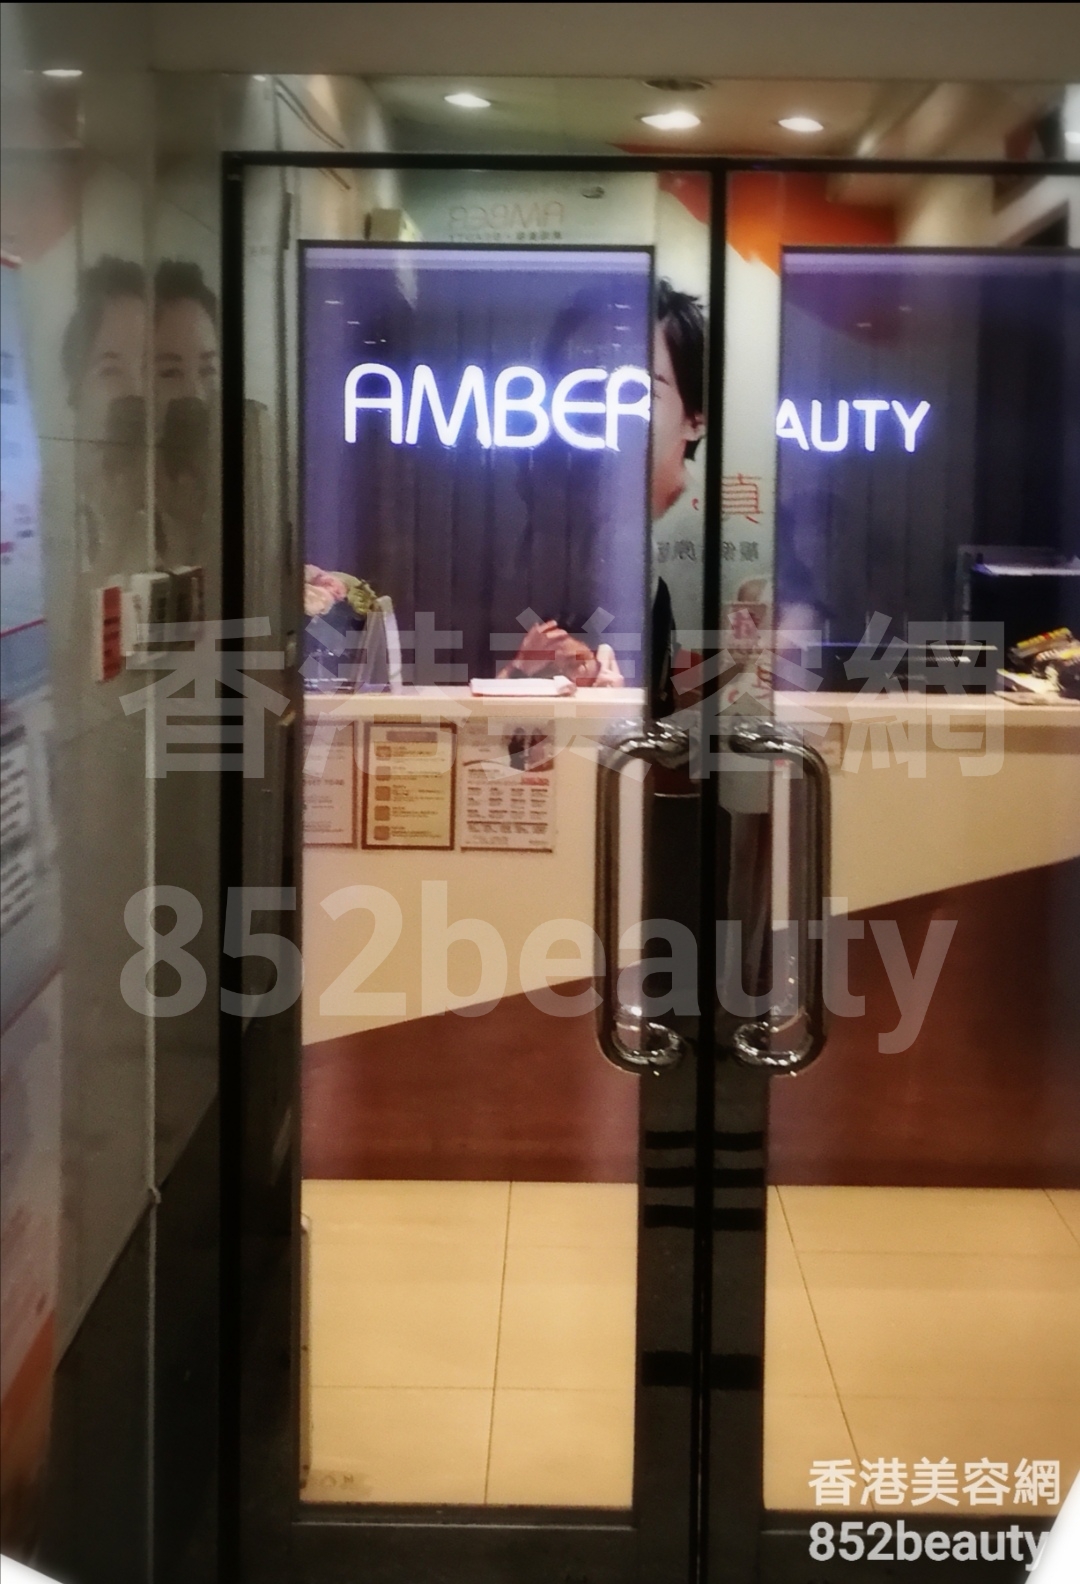 香港美容網 Hong Kong Beauty Salon 美容院 / 美容師: 琥珀美容 Amber Beauty (元朗店)